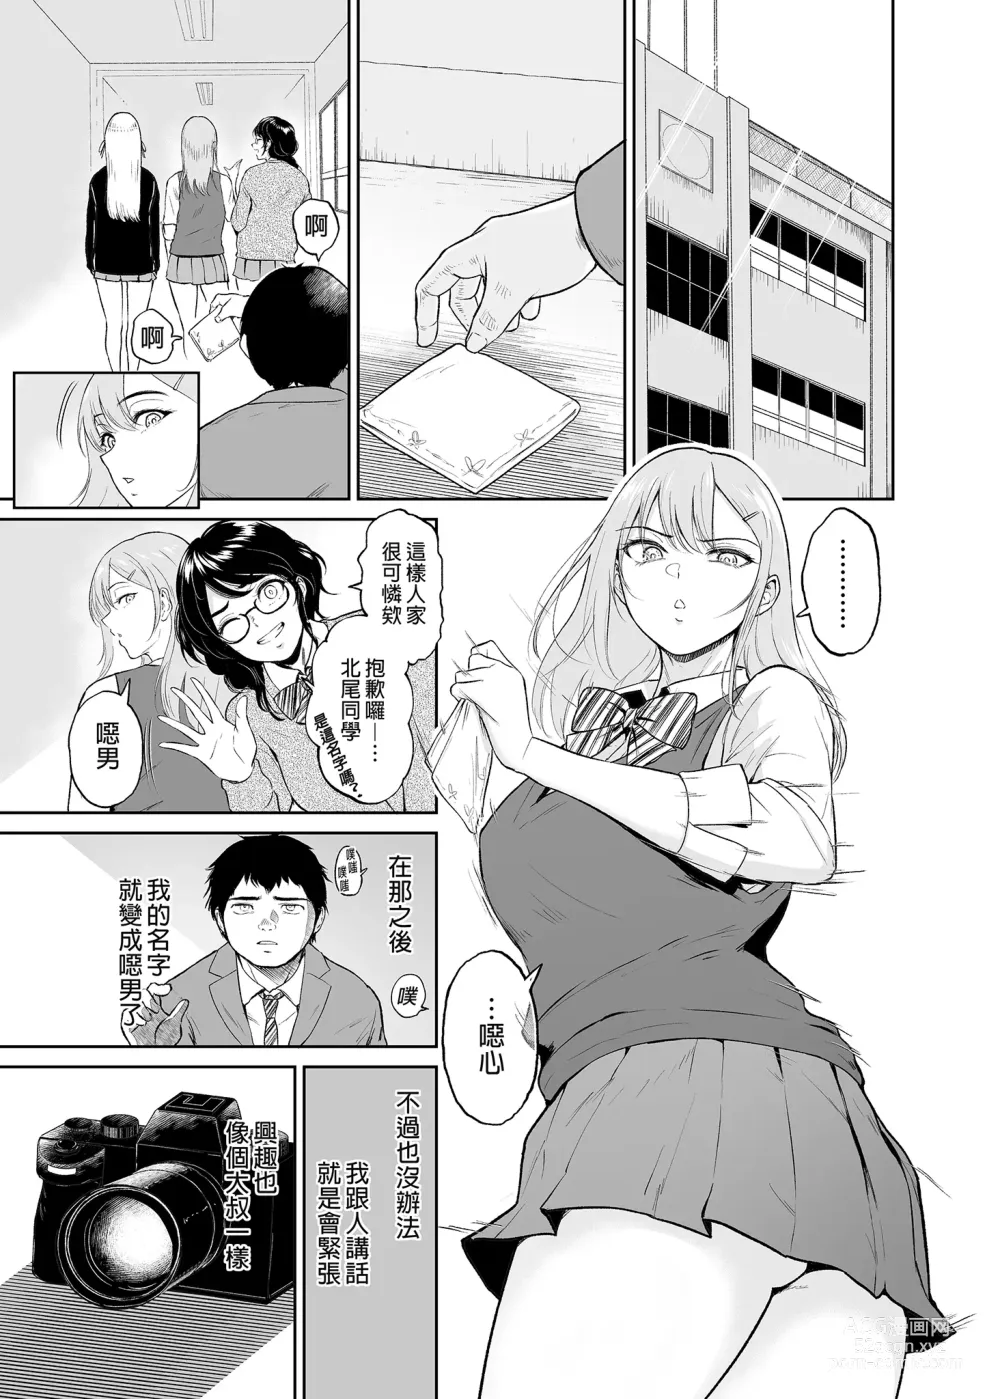 Page 5 of doujinshi 処女を散らす部屋ーキモオタの僕がクラスのギャルの処女喪失に付き合うことになった件